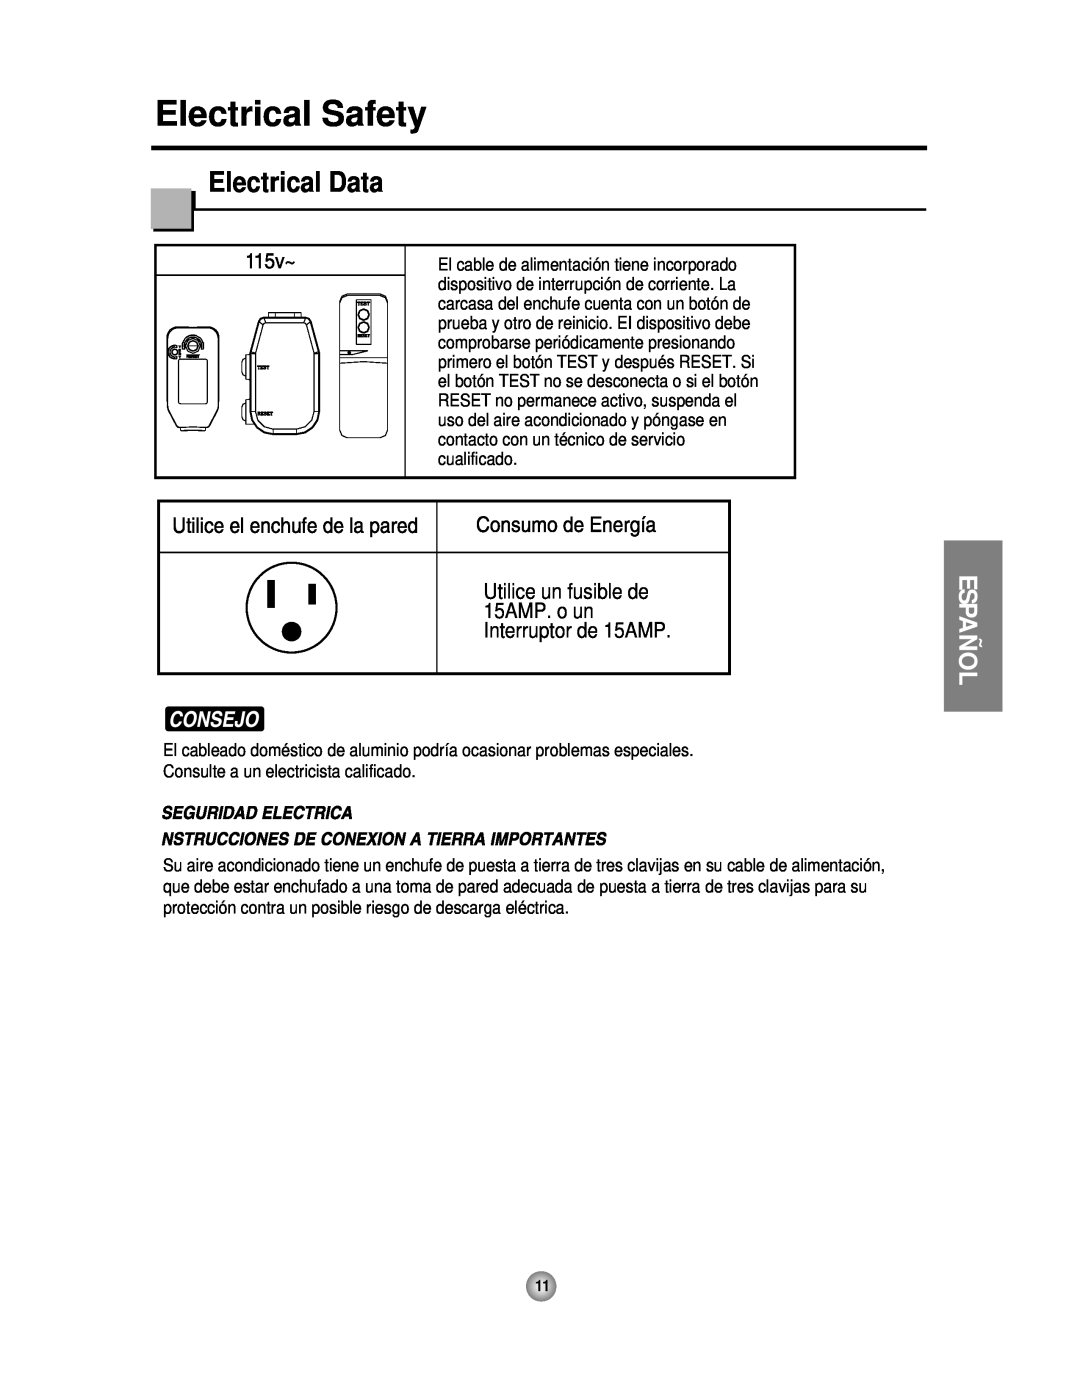 Friedrich CP06 manual Electrical Safety, Electrical Data, Español, Consulte a un electricista calificado 